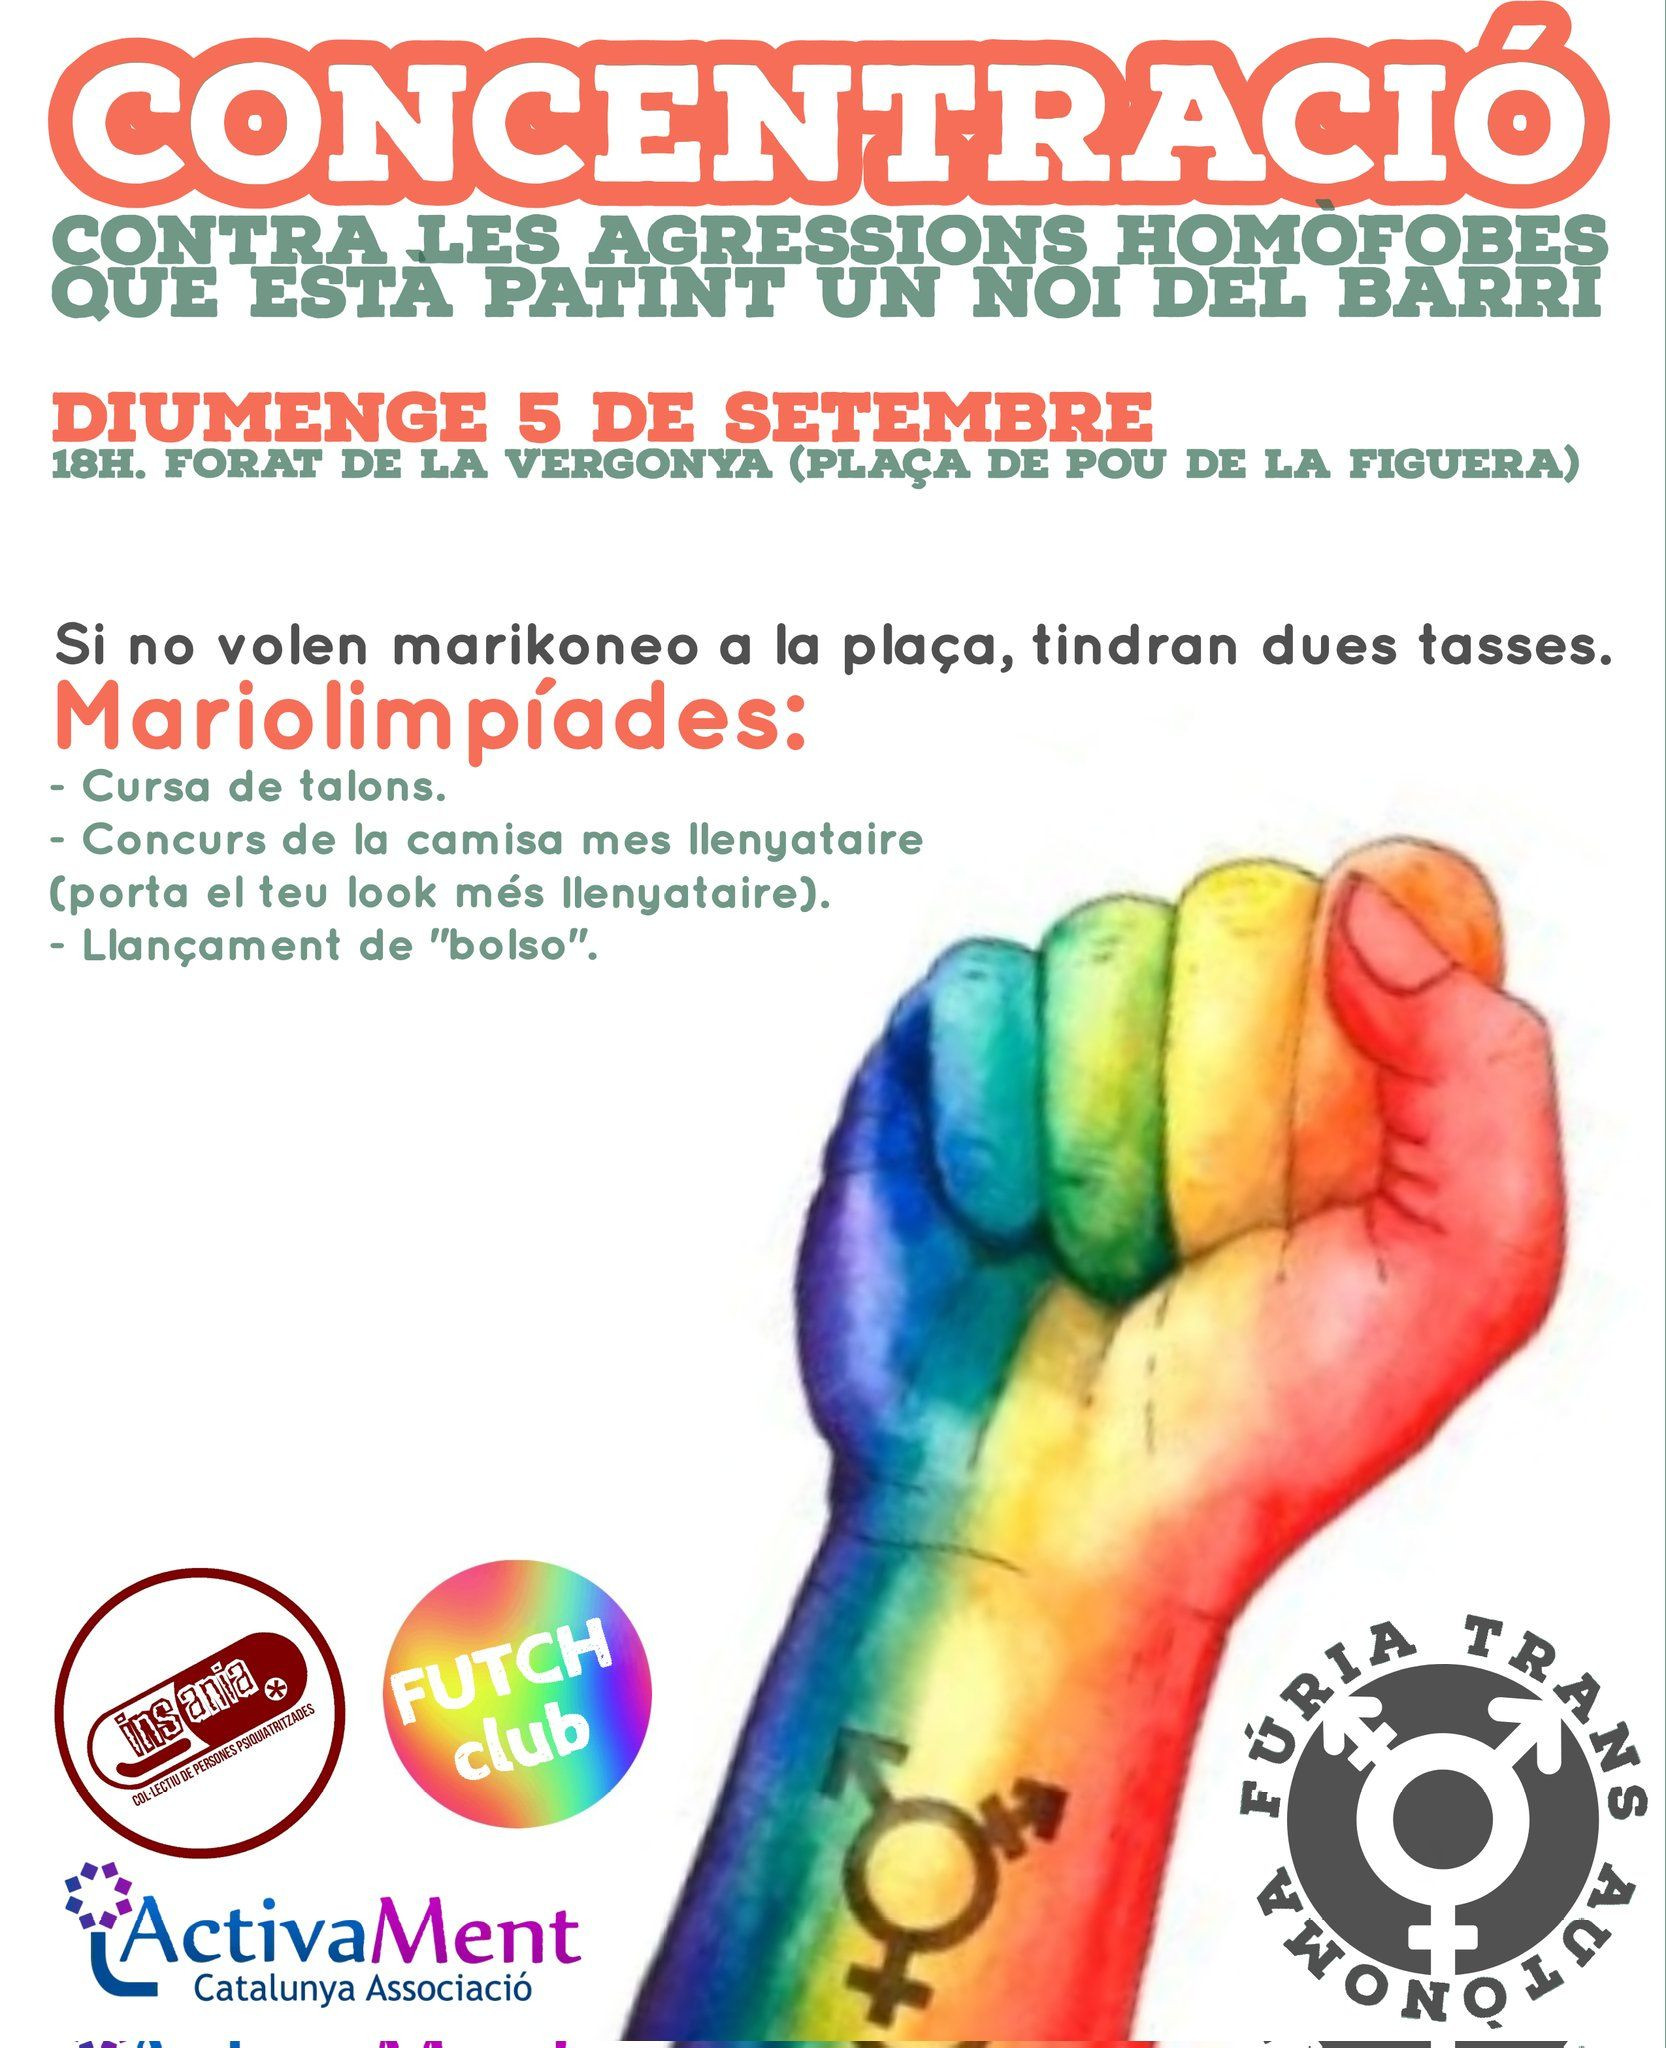 Manifestación contra la homofobia el 5 de septiembre / REDES SOCIALES